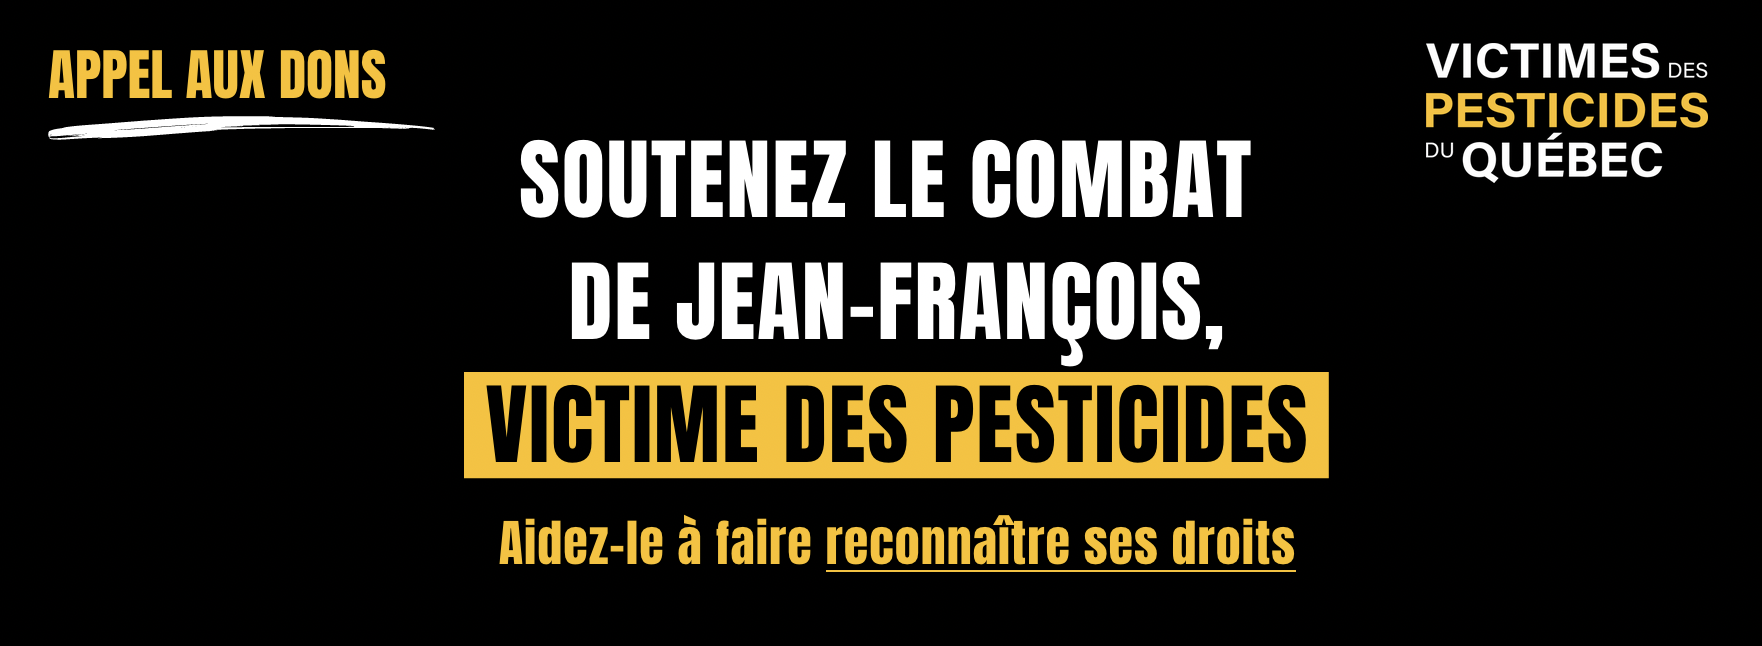 Soutenez le combat de Jean-François, victime des pesticides